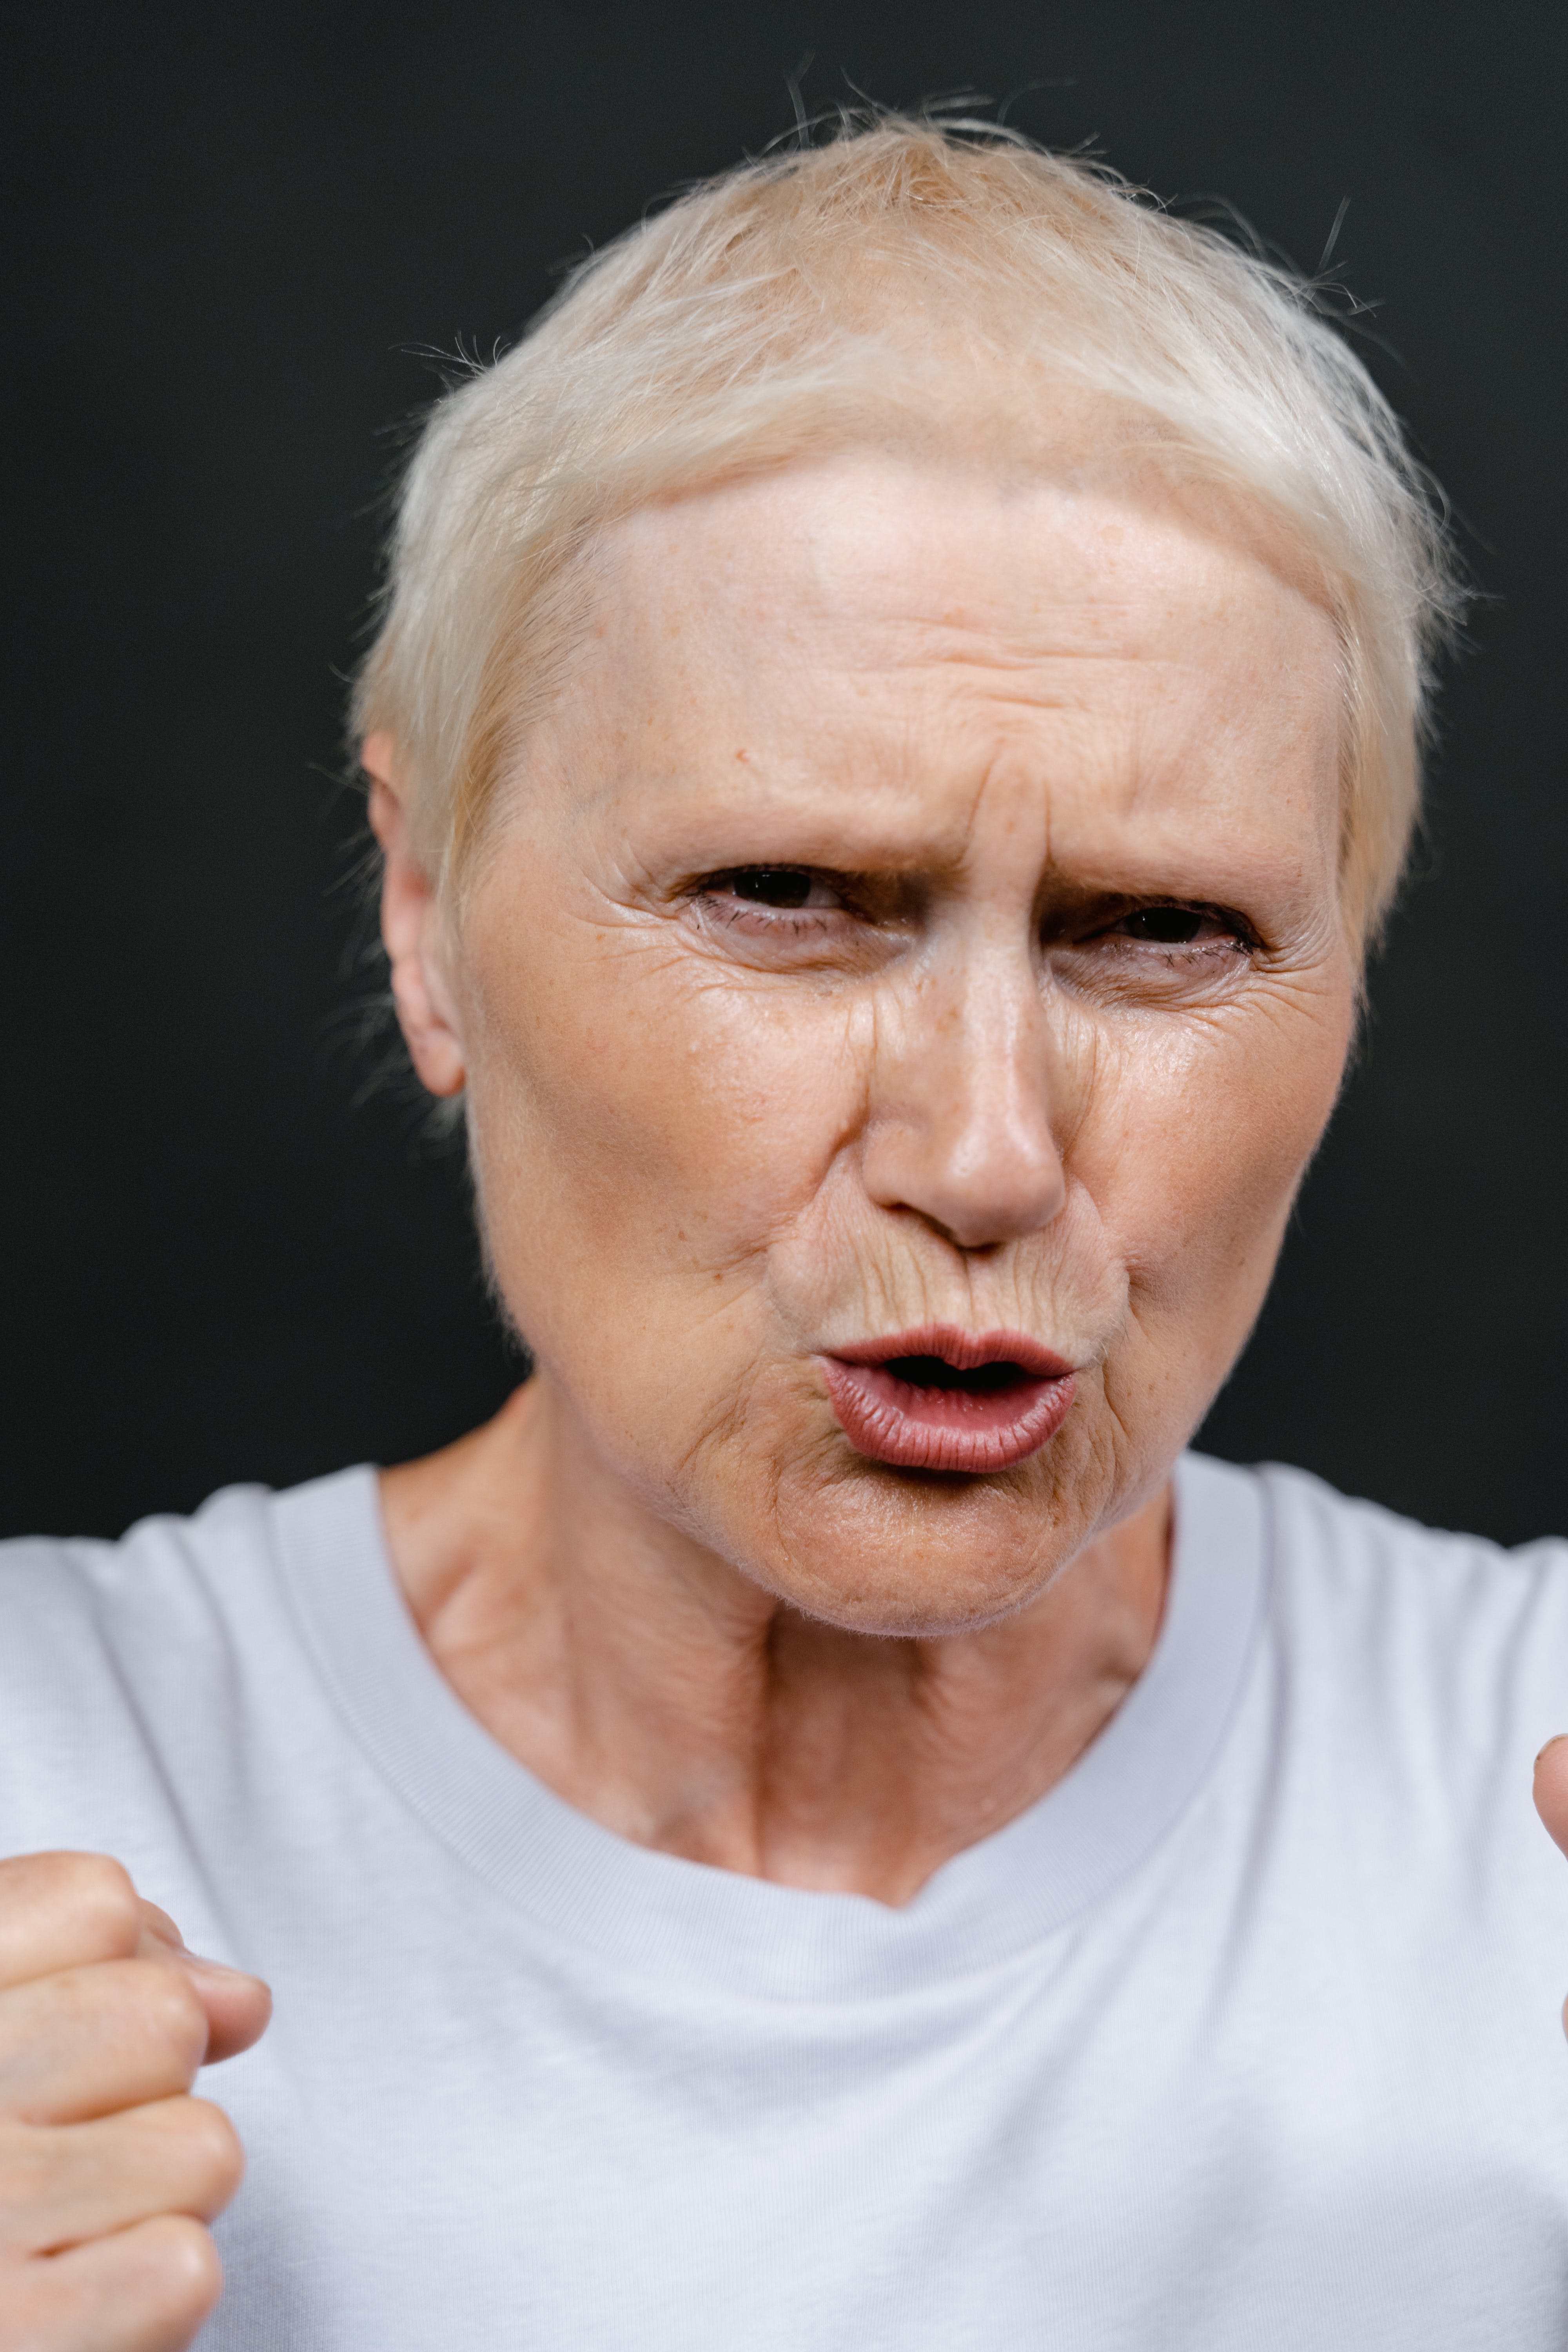 An older woman looking upset | Source: Pexels